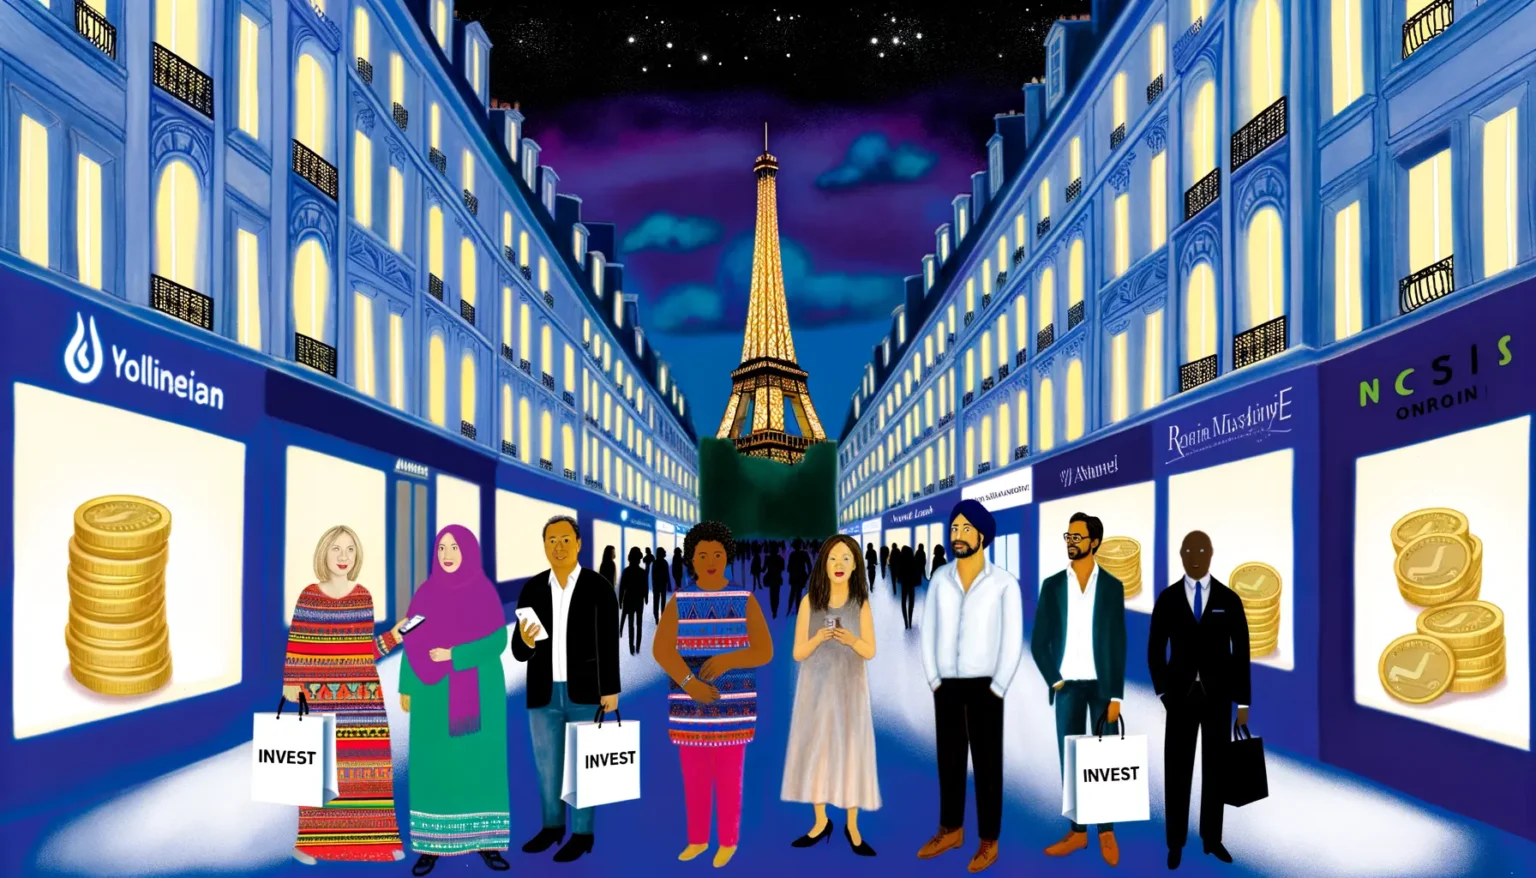 Illustration einer belebten Einkaufsstraße bei Nacht mit stilisierten Gebäuden und dem Eiffelturm im Hintergrund. Mehrere Personen verschiedener Ethnien und Berufe stehen im Vordergrund, einige halten Einkaufstaschen mit der Aufschrift "INVEST". Im Bildvordergrund sind Stapel von Goldmünzen platziert. Die Schaufenster entlang der Straße zeigen Unternehmenslogos und fiktive Markennamen.